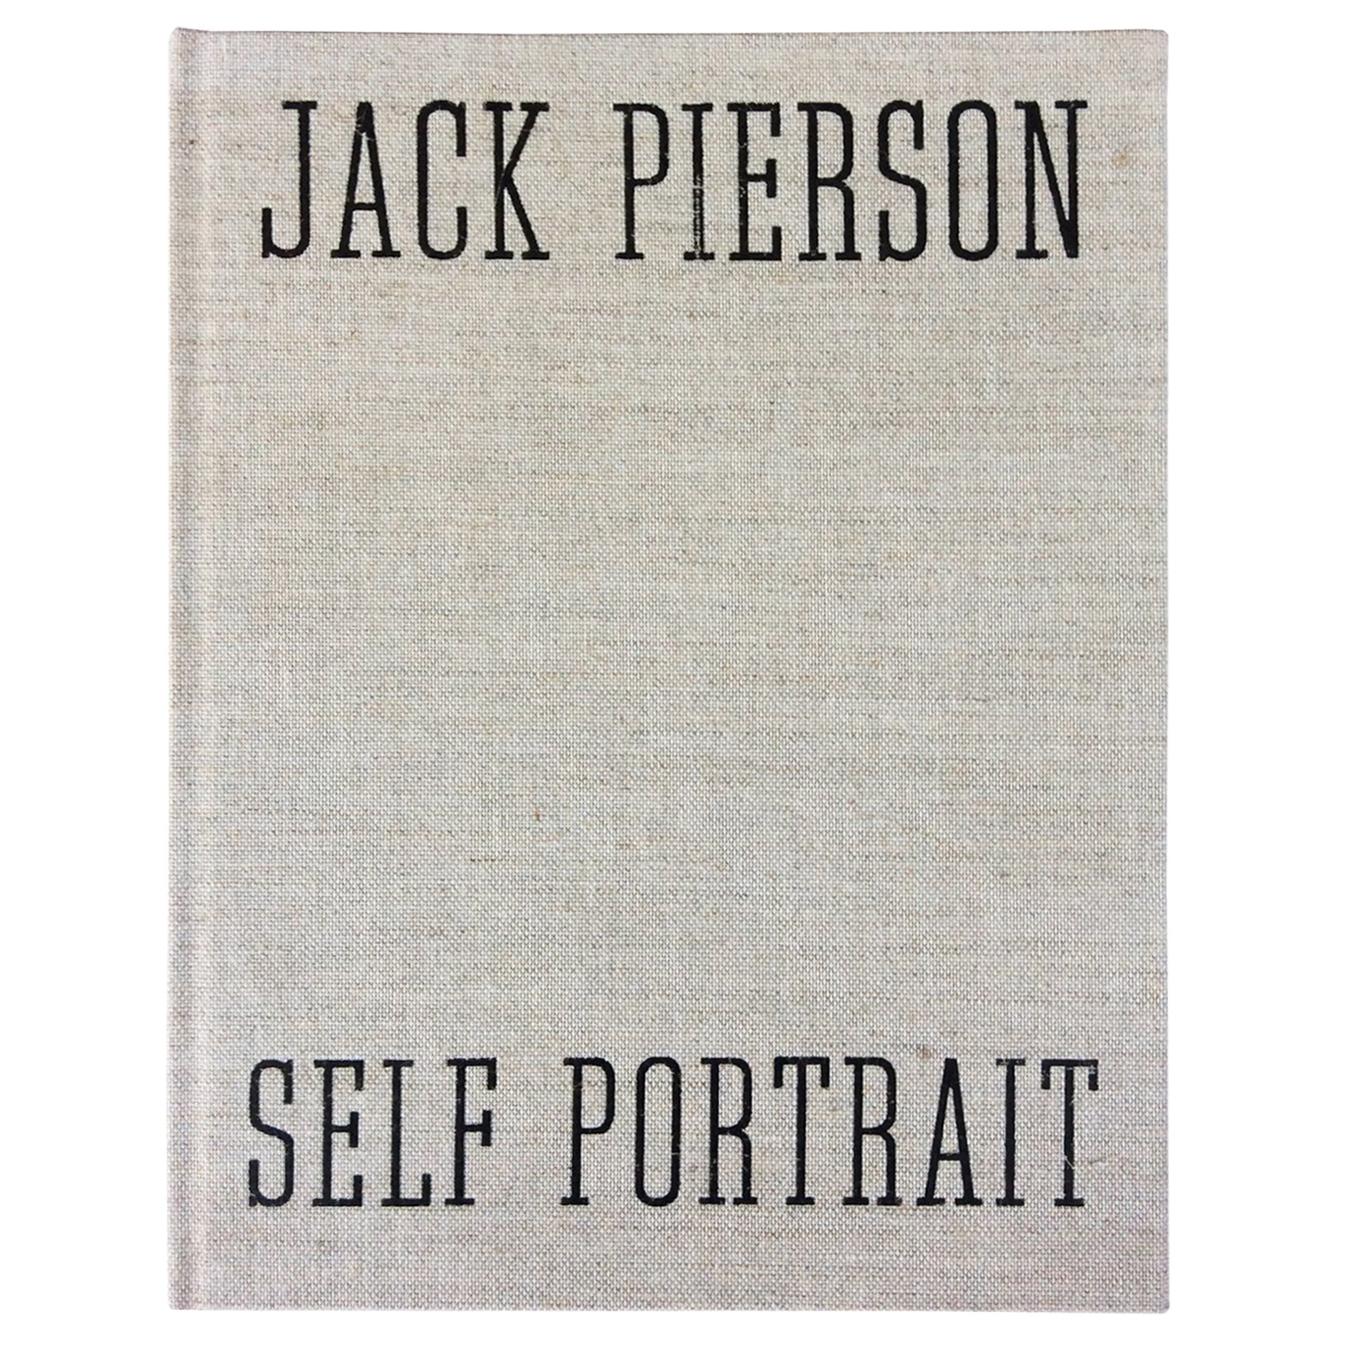 Jack Pierson Photography Book, "Self Portrait"